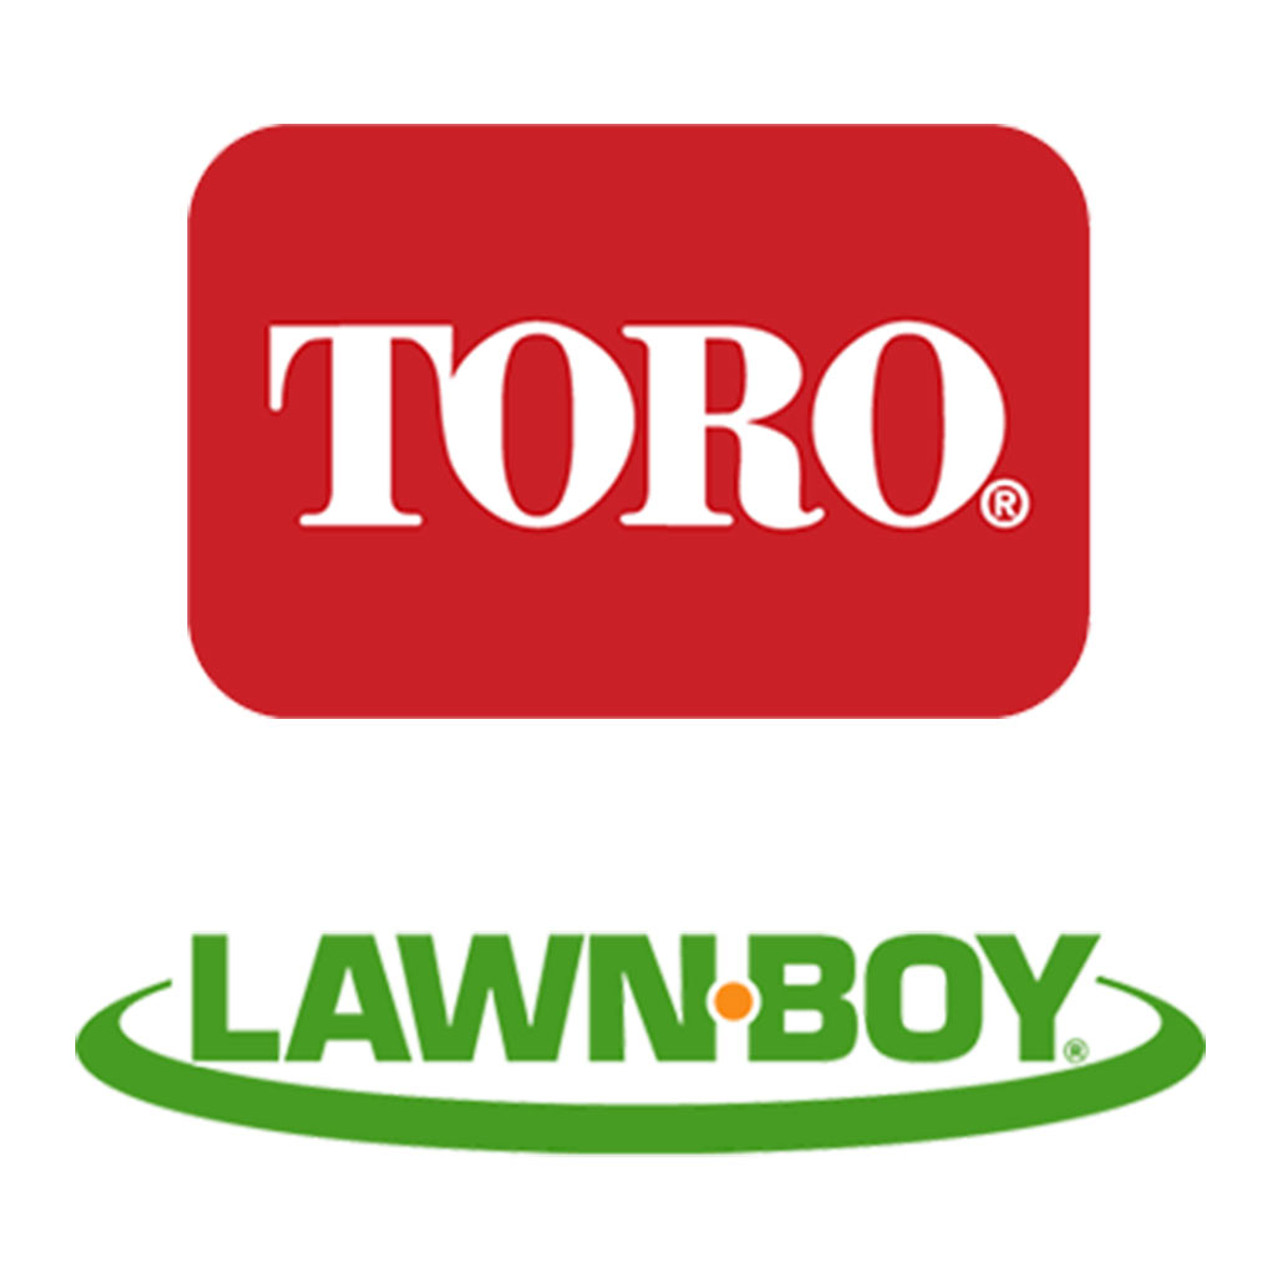 Toro Lawn-Boy 110-9650 Leaf Spring Asm